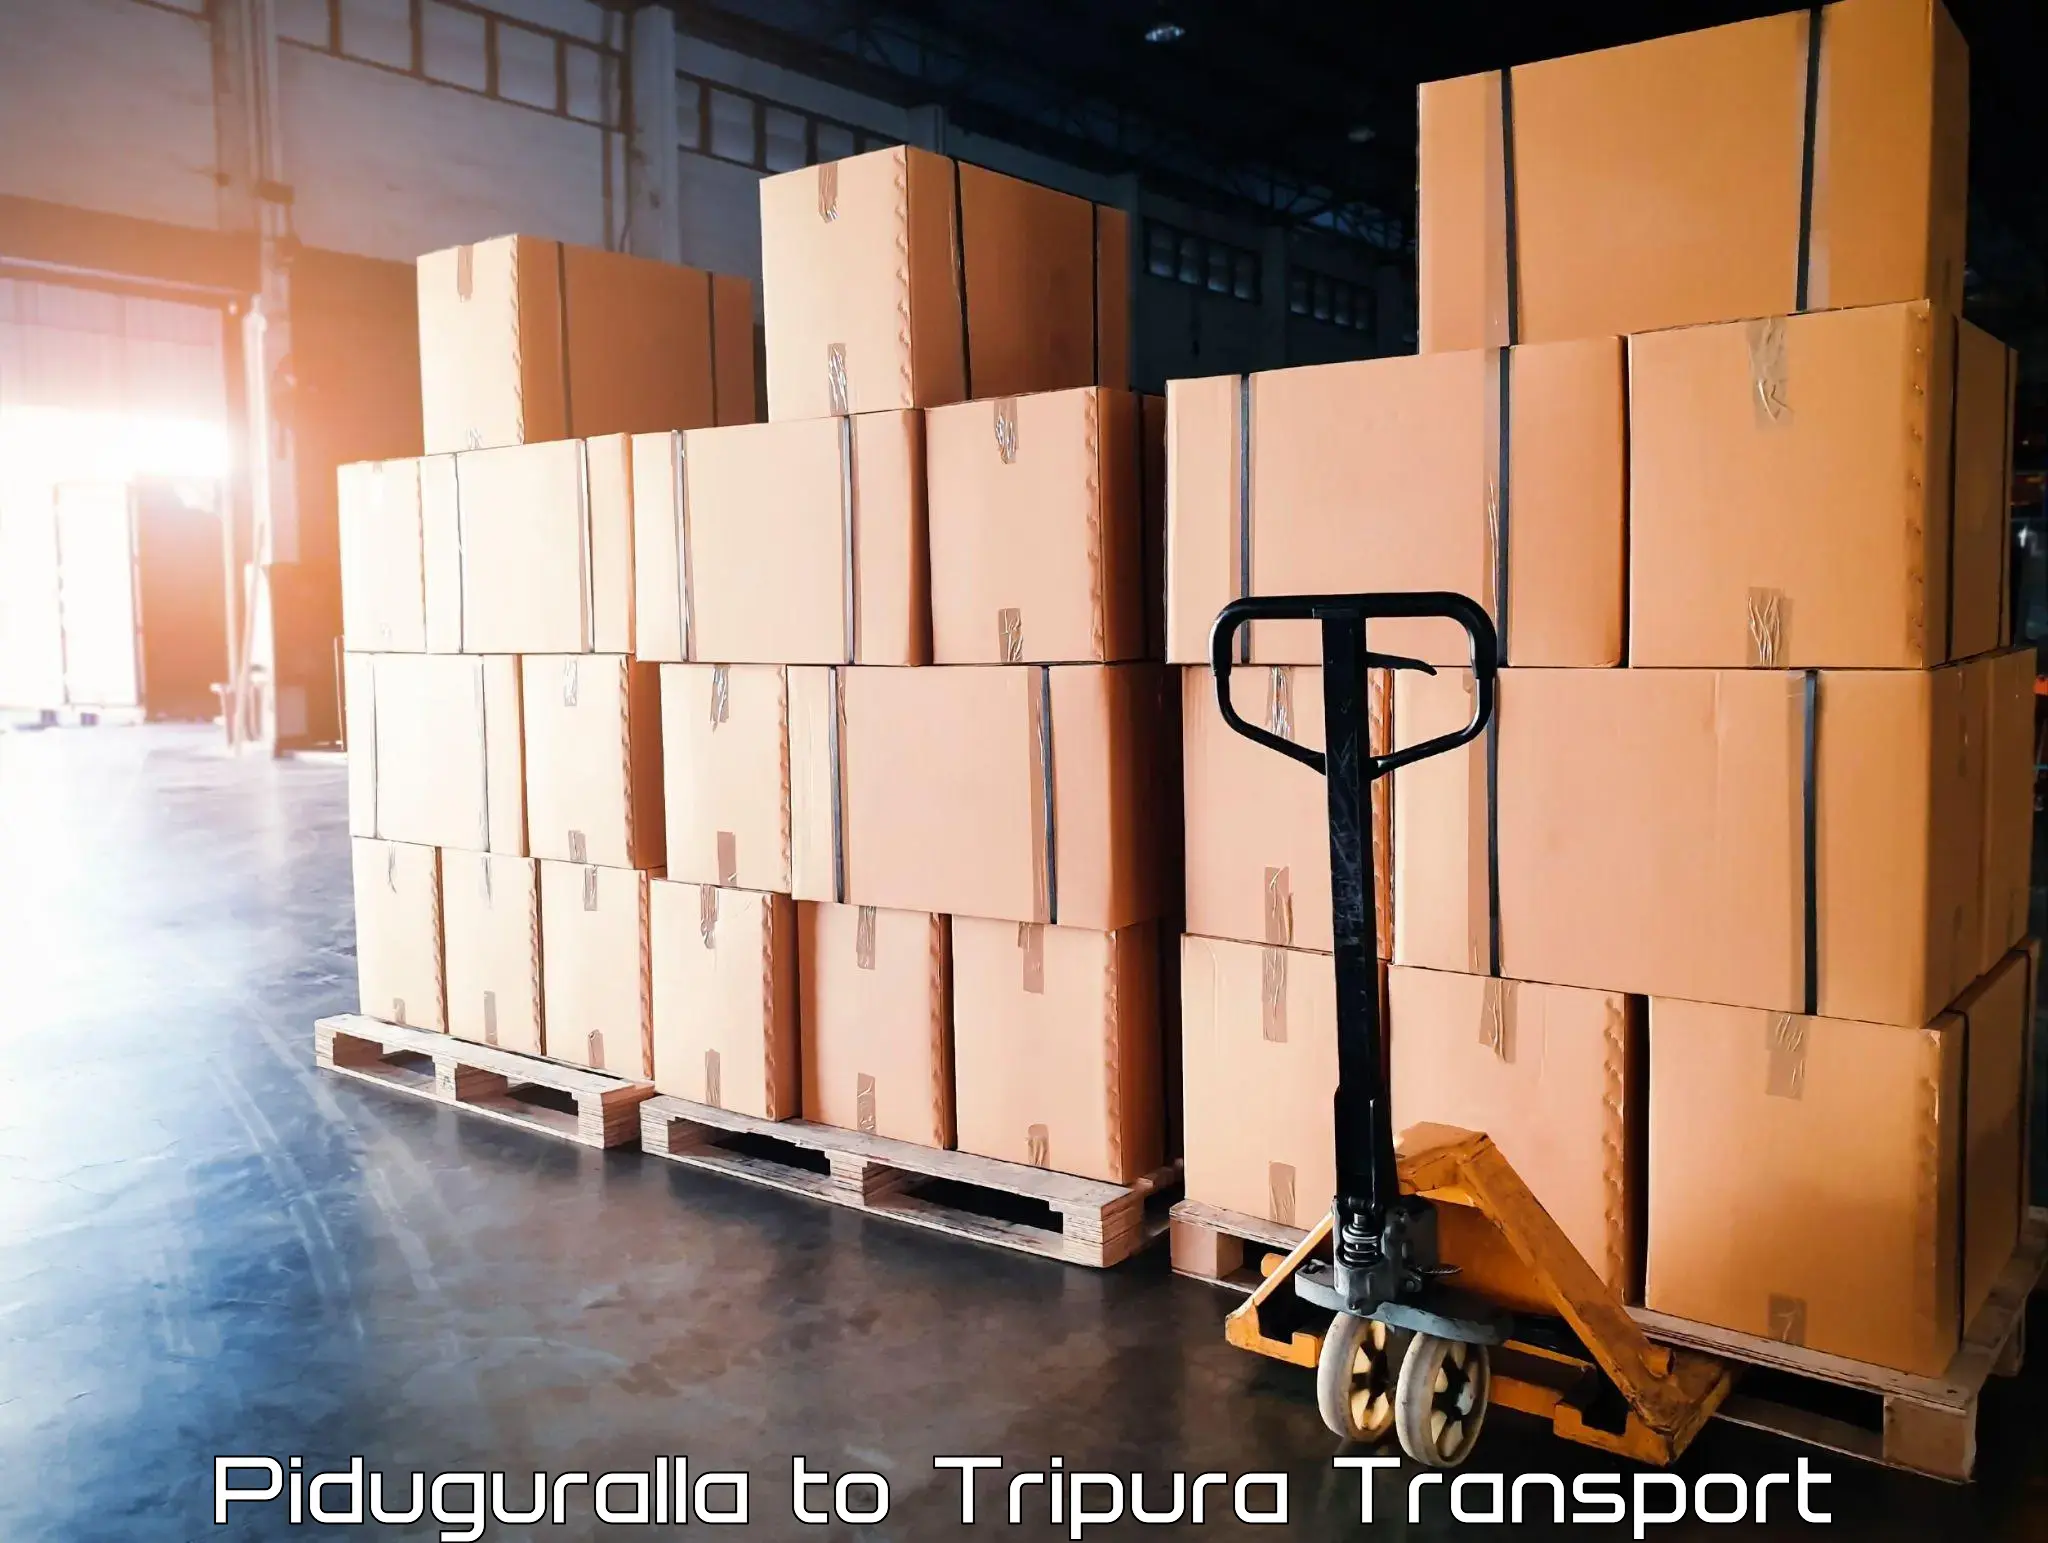 India truck logistics services Piduguralla to Manughat